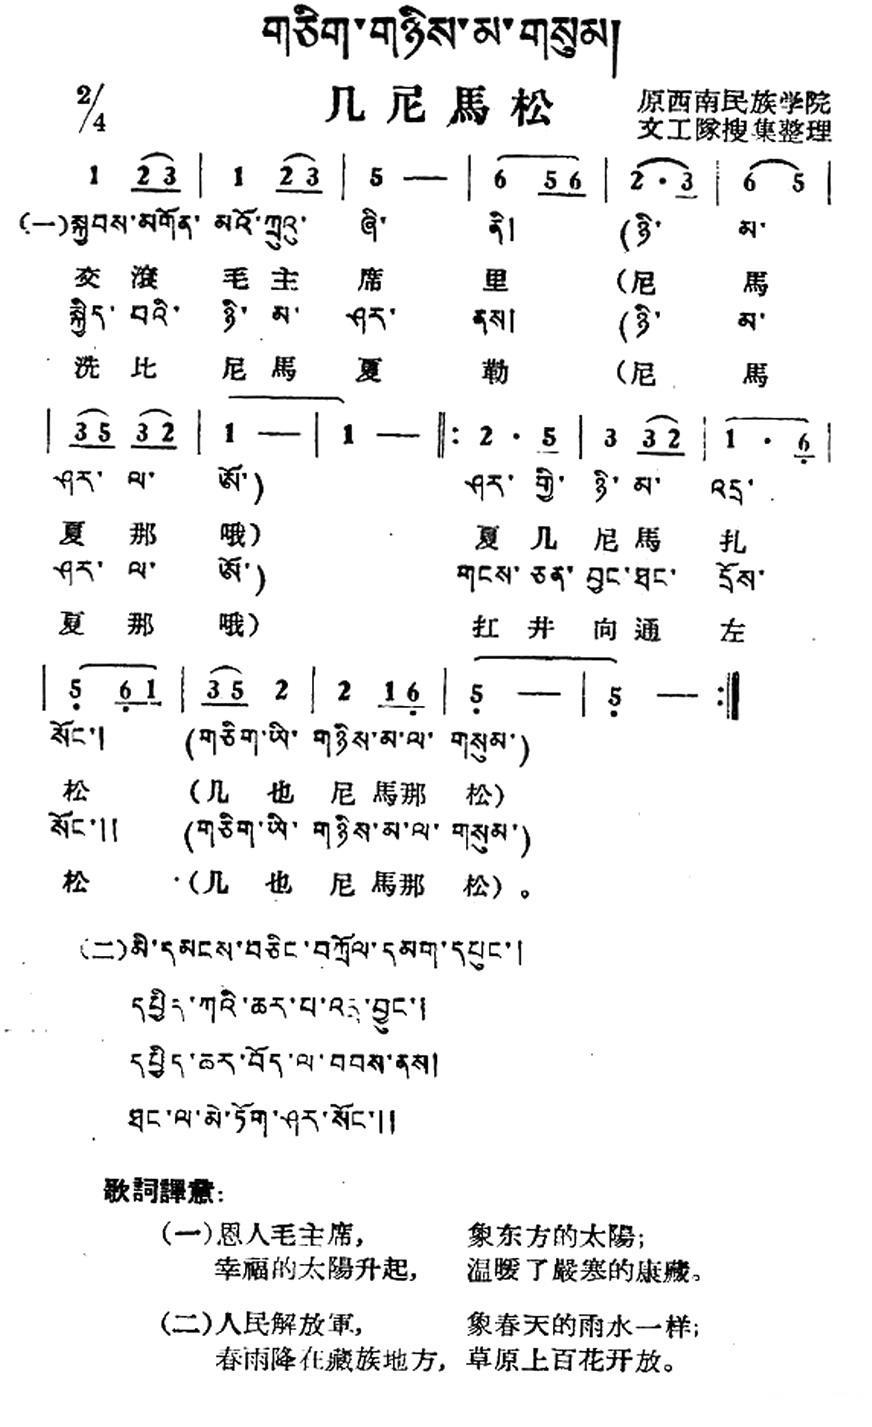 几尼马松（藏族民歌、藏文及音译版）(1).jpg